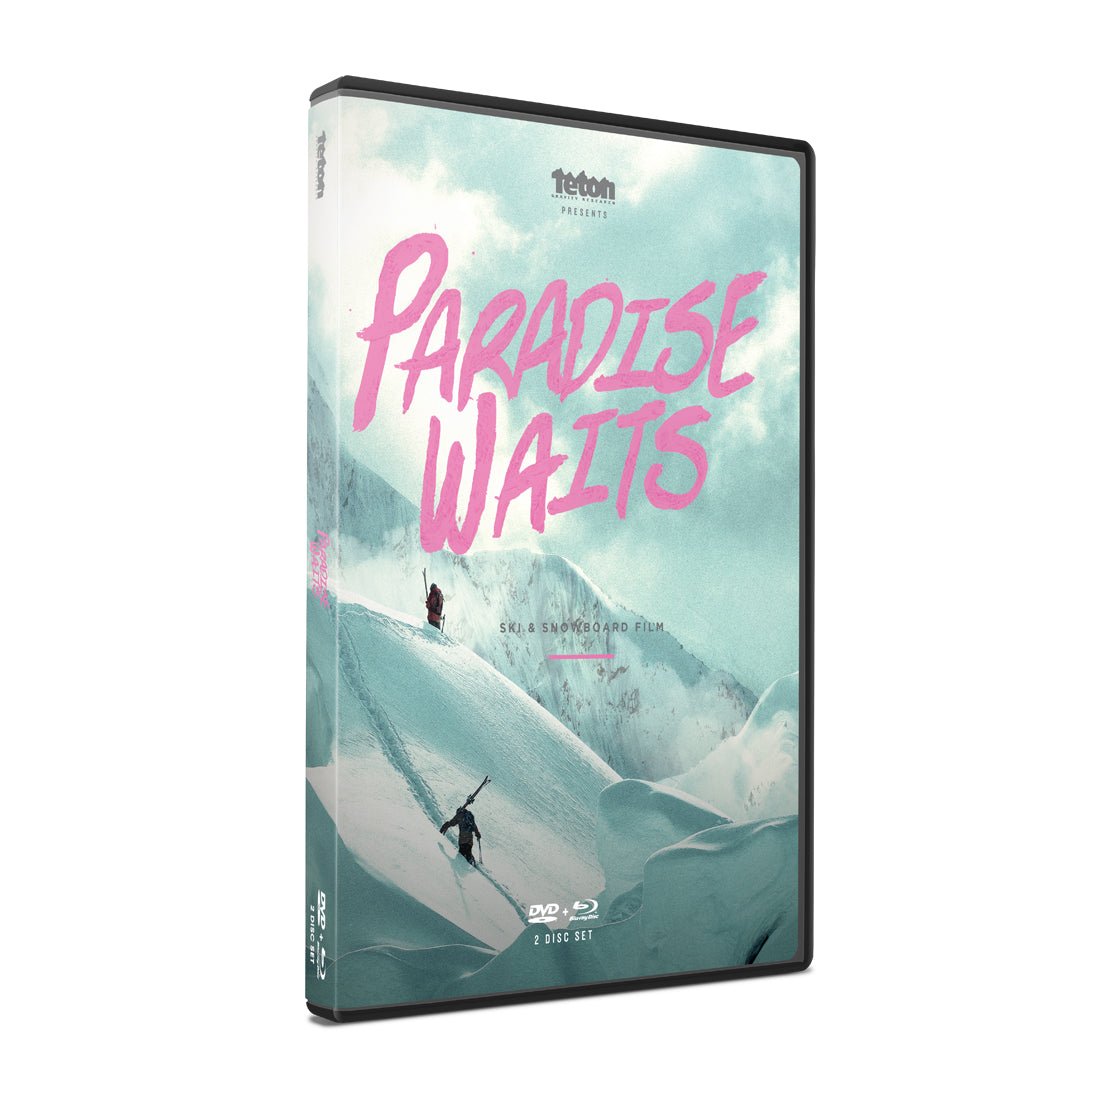 Paradise Waits DVD/Blu-Ray Combo Pack - Teton Gravity Research